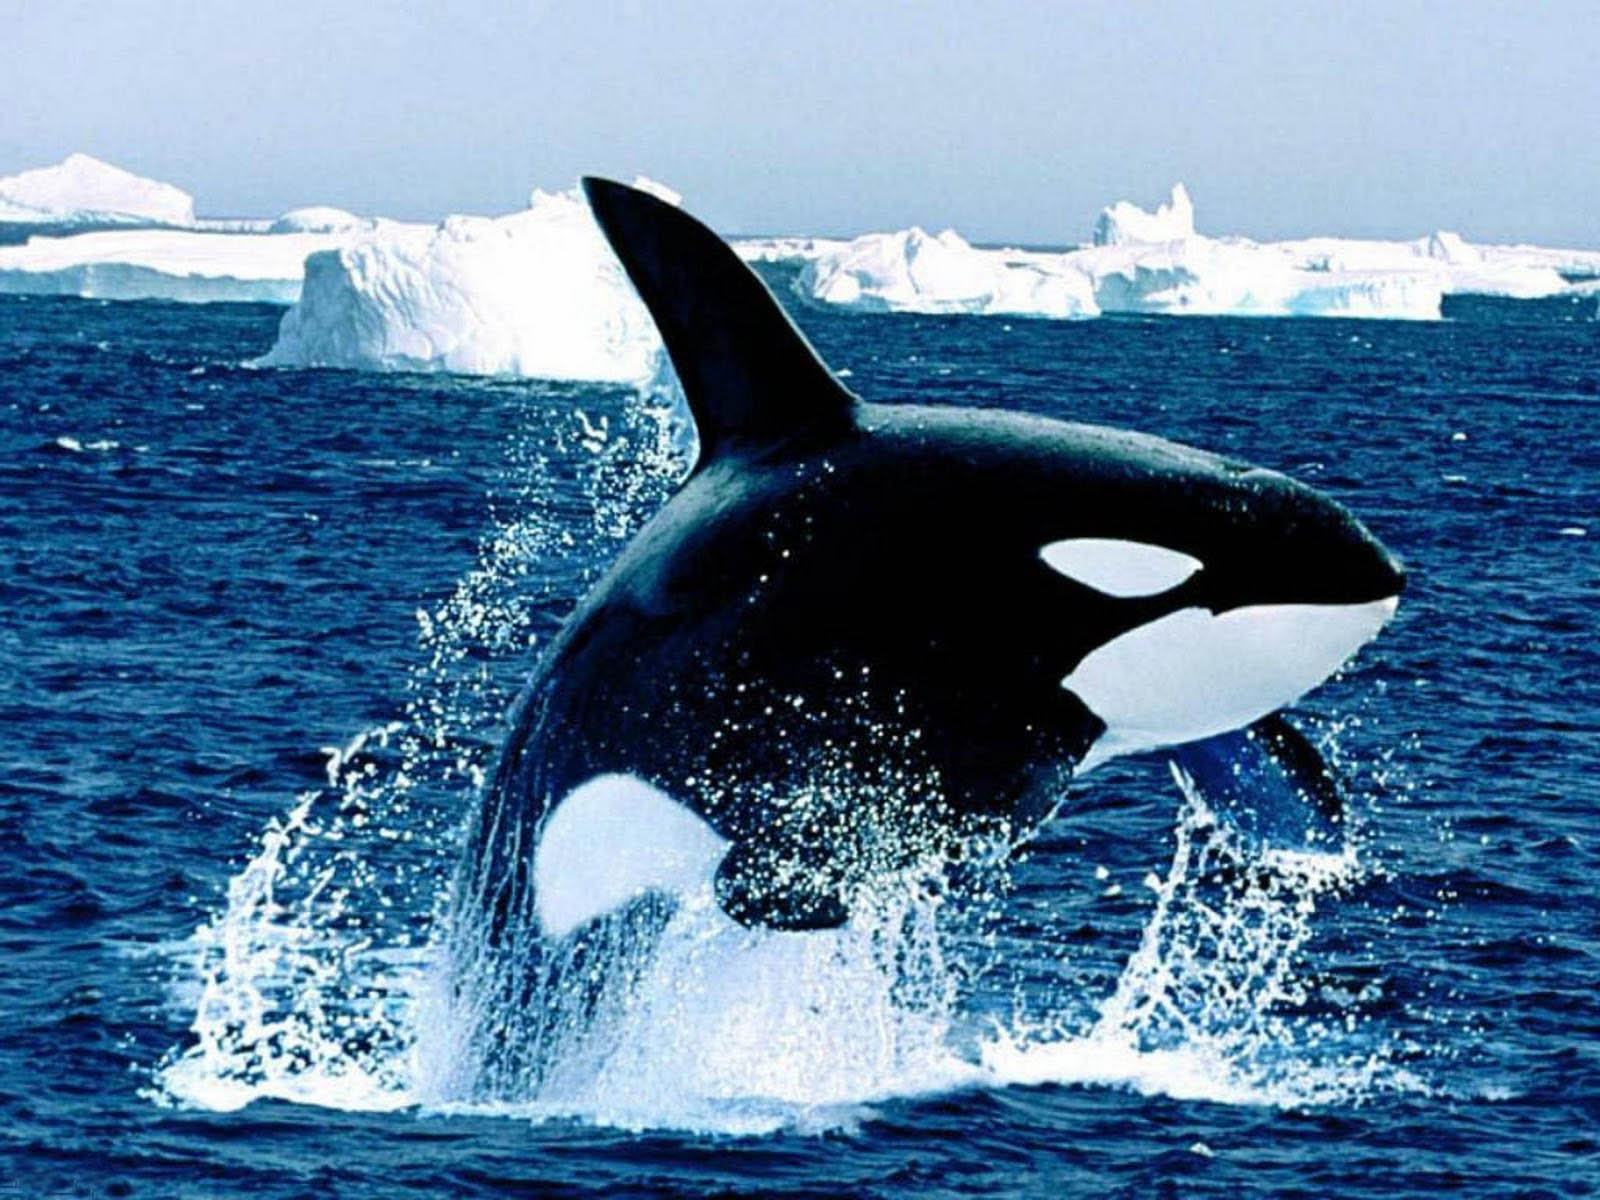 오카 벽지,범고래,해양 포유류,해양 생물학,고래,돌고래